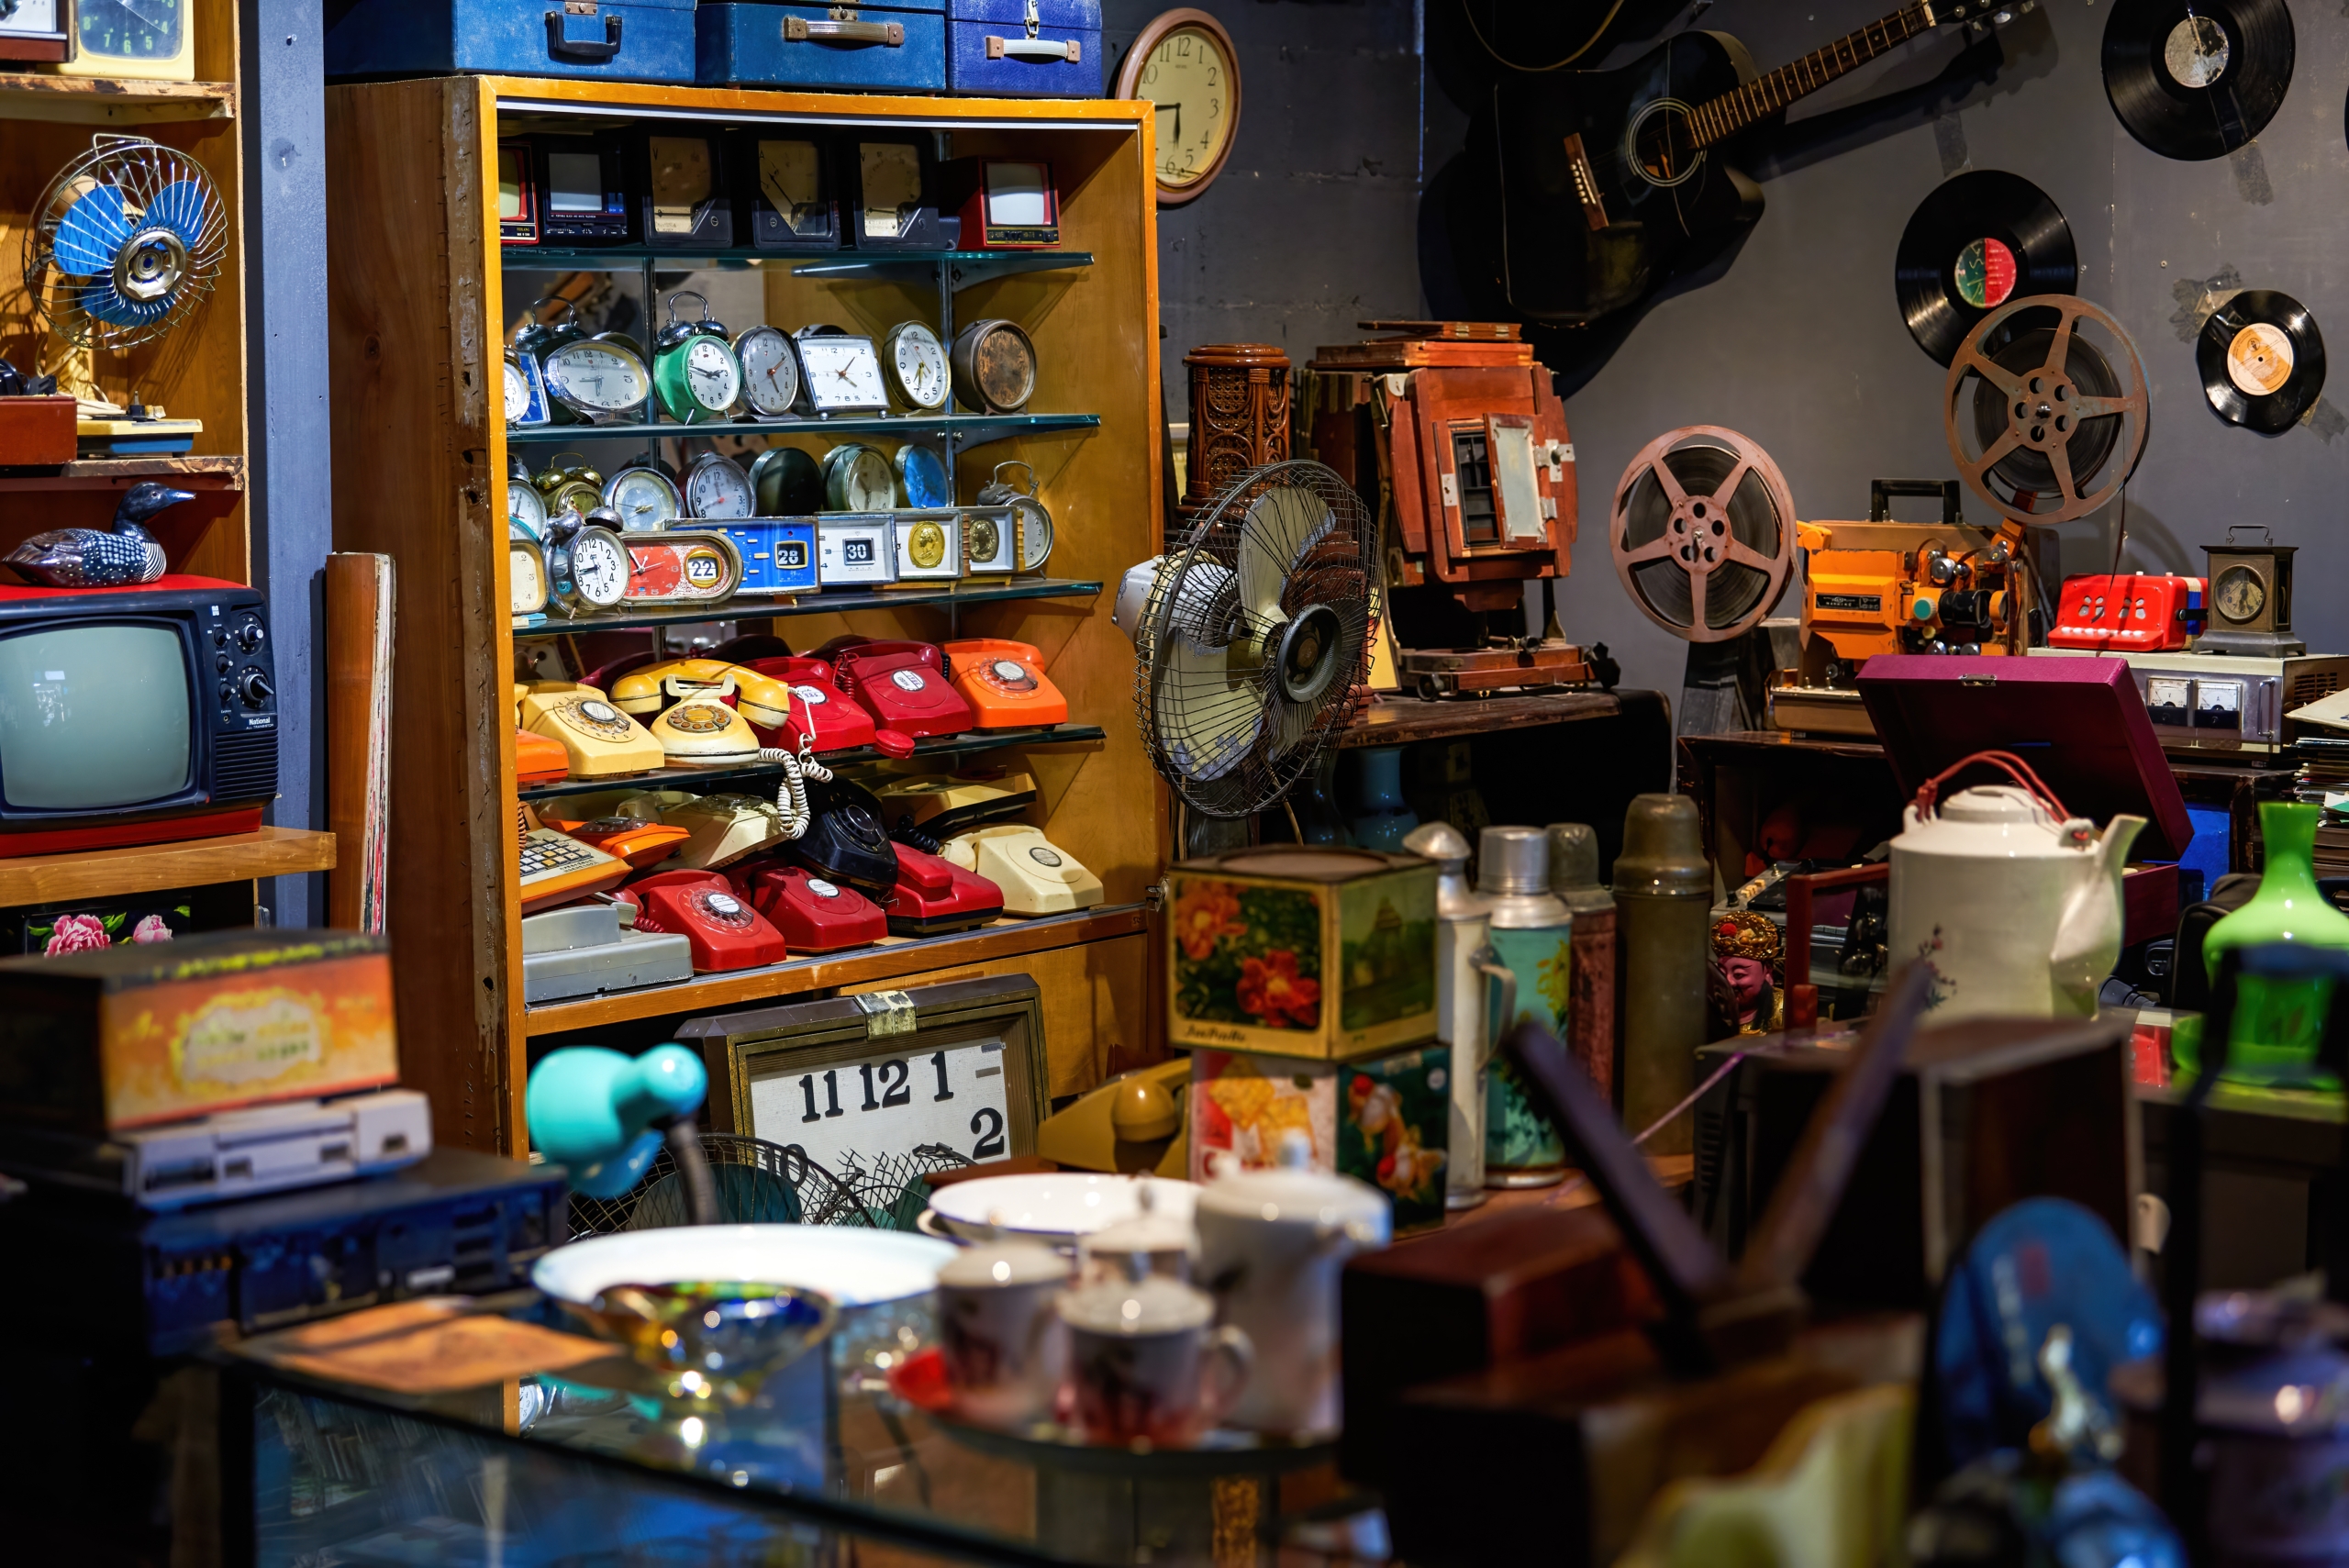 Cửa hàng đồ cũ có rất nhiều mặt hàng, một số rất đáng mua, nhưng cũng có một số tiềm ẩn rủi ro và cần người mua cân nhắc kỹ. (Ảnh: Shutterstock)